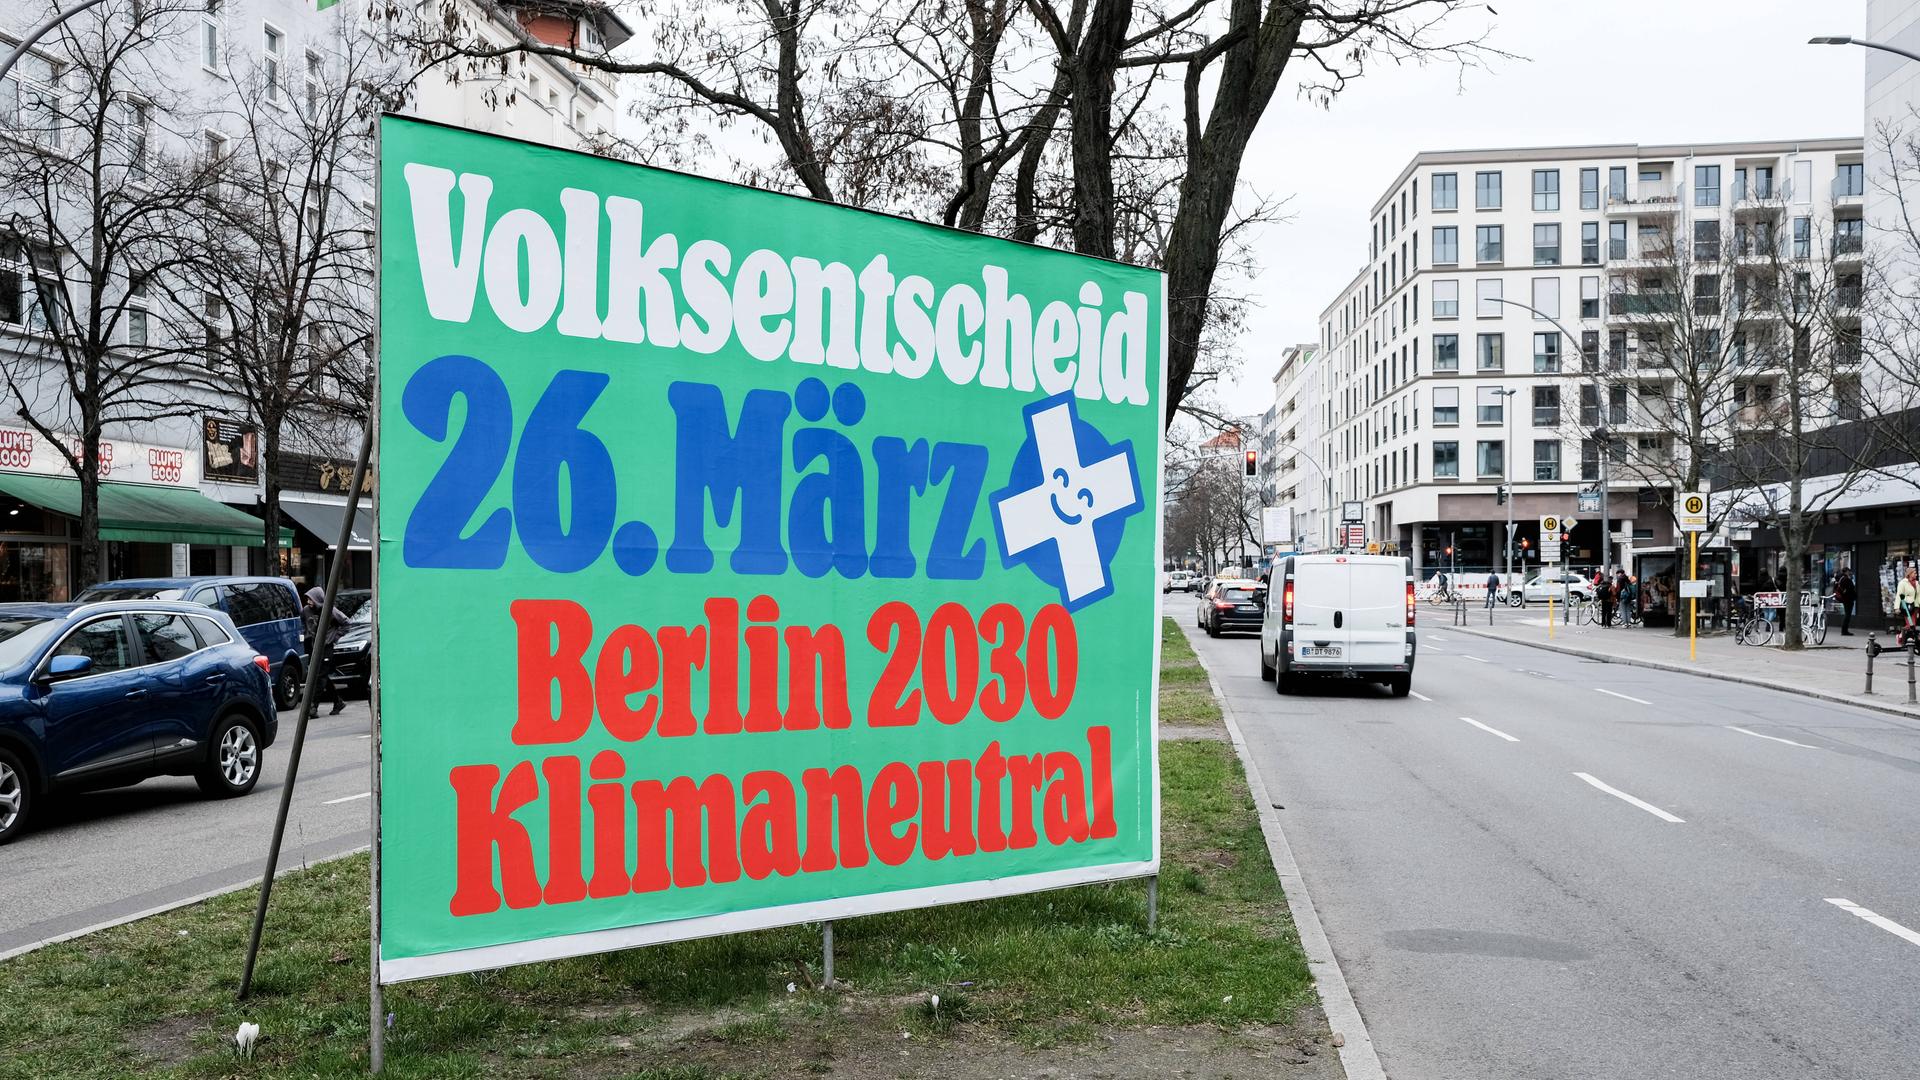 Plakat mit der Aufschrift "Volksentscheid 26. März Berlin 2030 klimaneutral" werben für das Volksbegehren